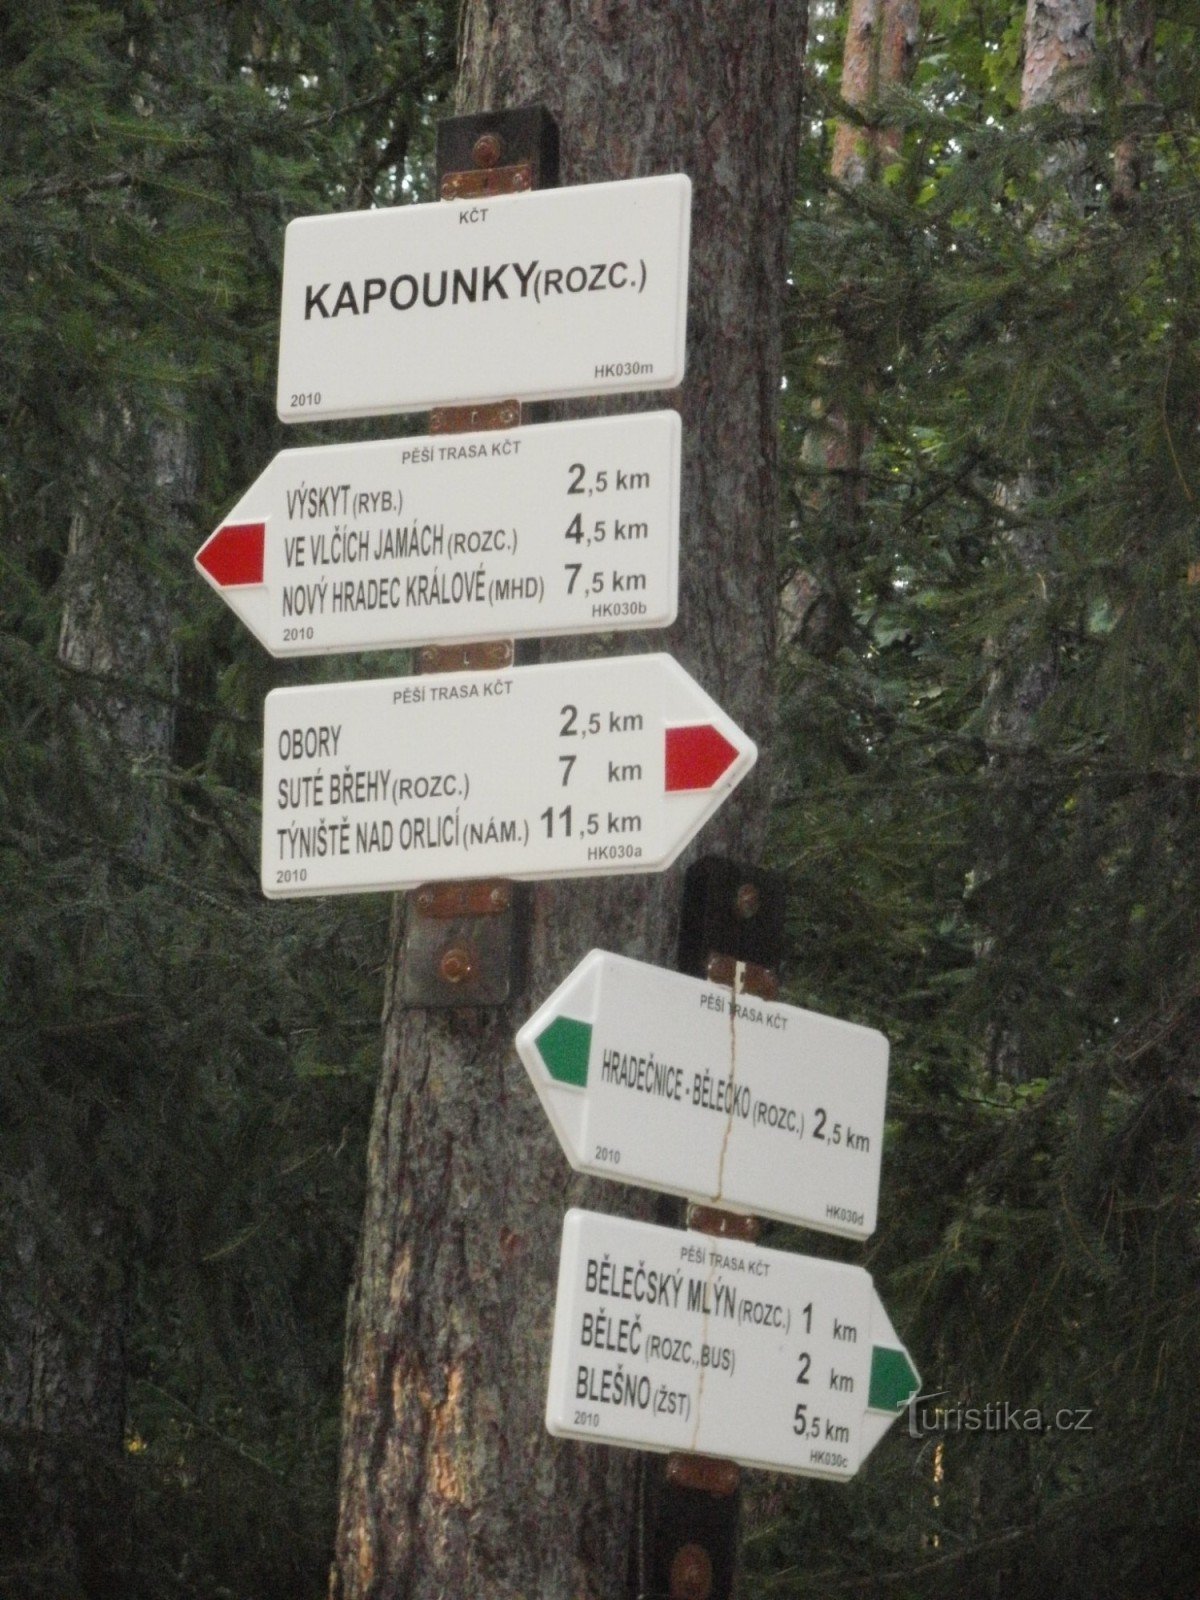 Ngã tư Kapounky - Hradecké lesy